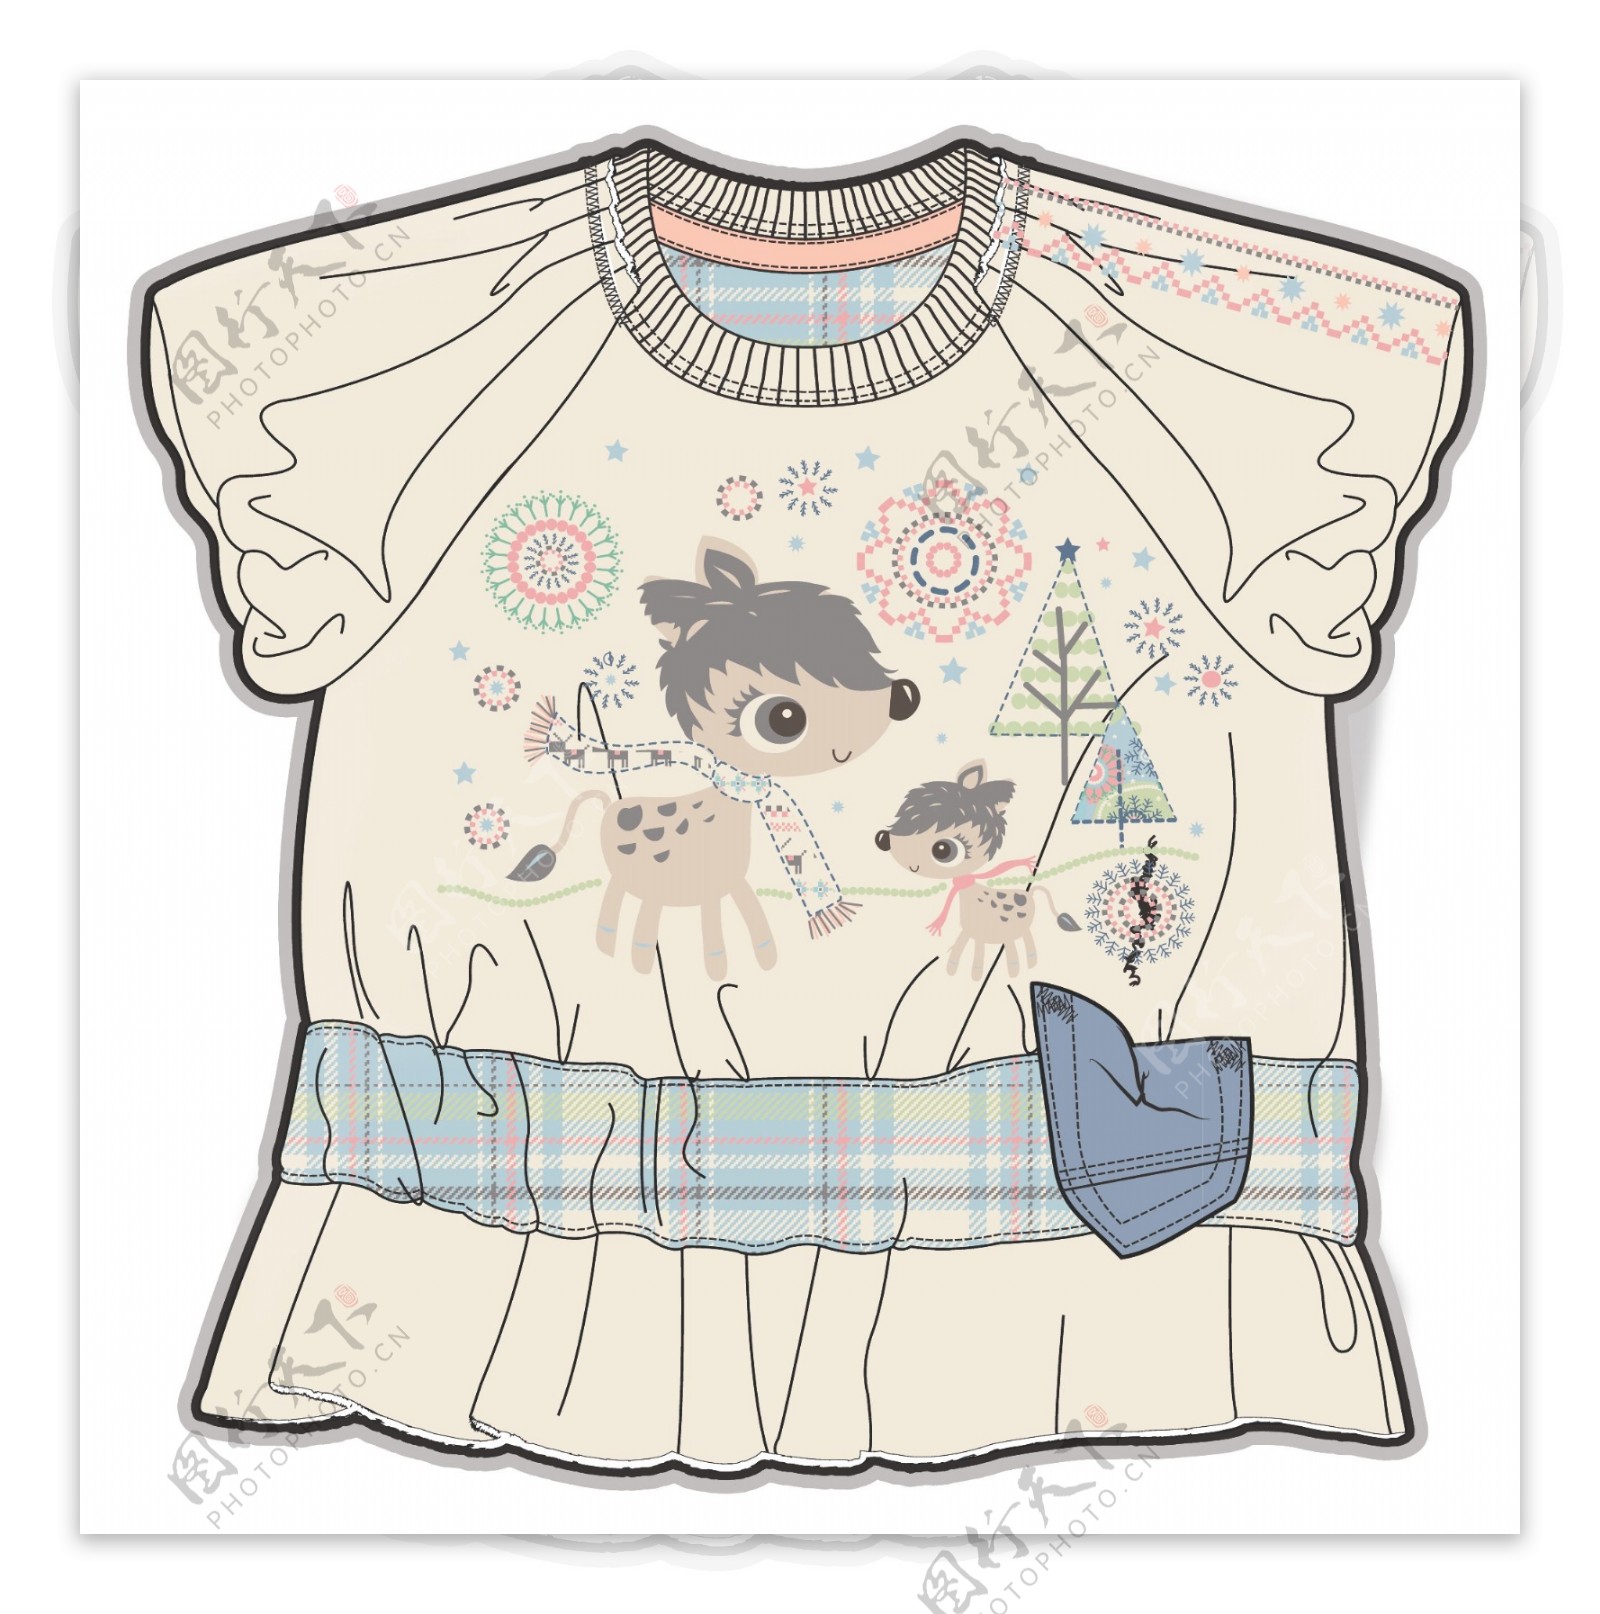 小鹿短袖女宝宝服装设计彩色稿件矢量素材